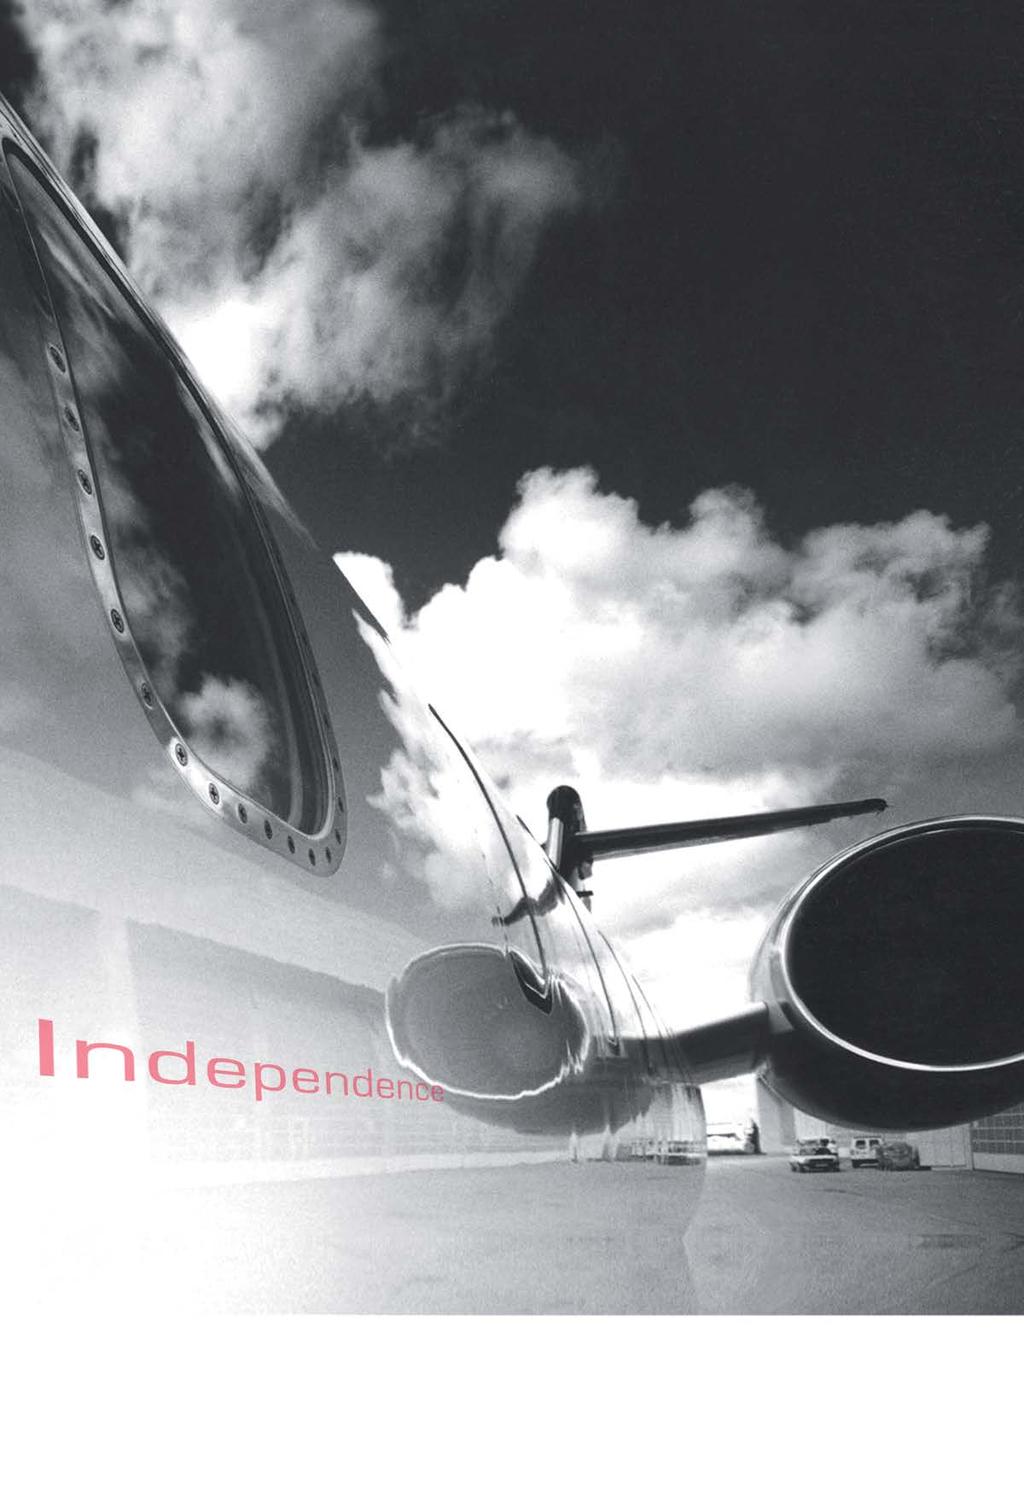 Air Independence 是一家向世界各地的顾客提供飞机购买,